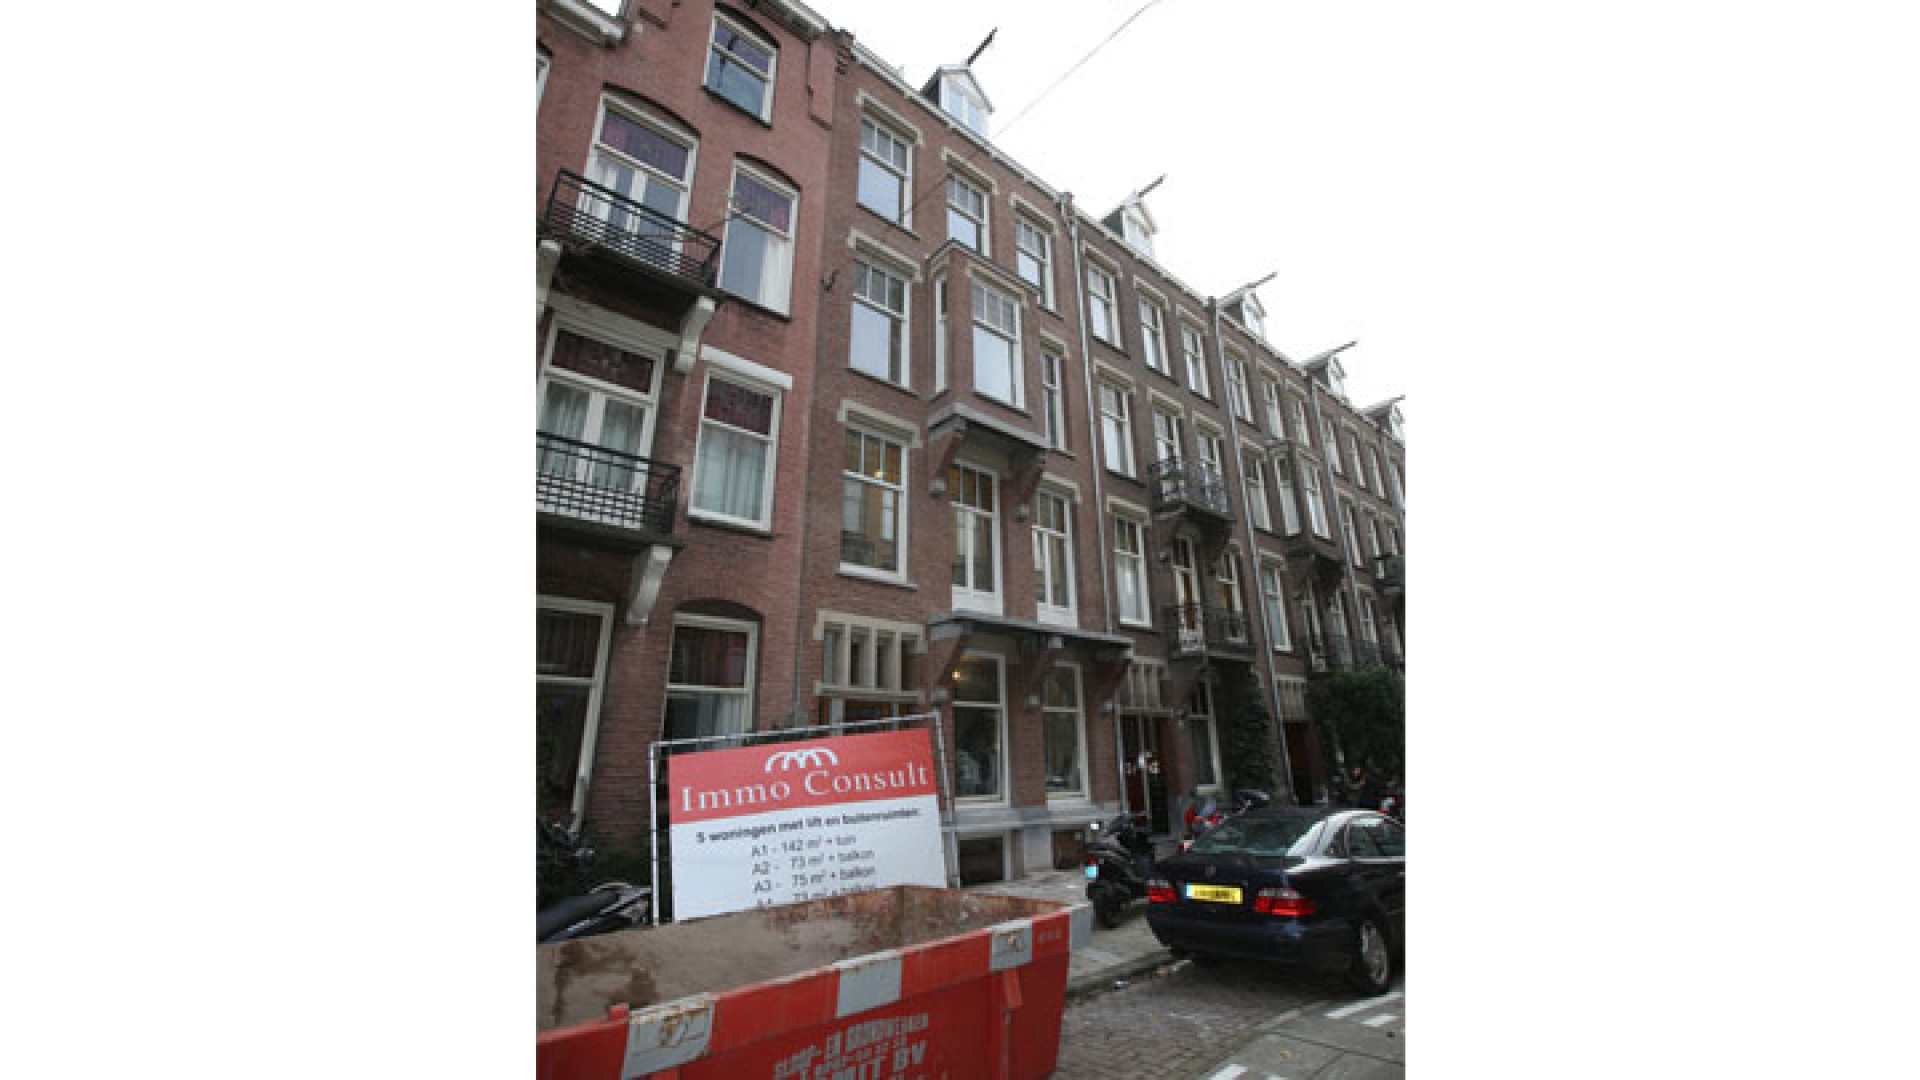 Doutzen Kroes koopt schitterend pand in Amsterdam Oud Zuid. Zie exclusieve foto's 5